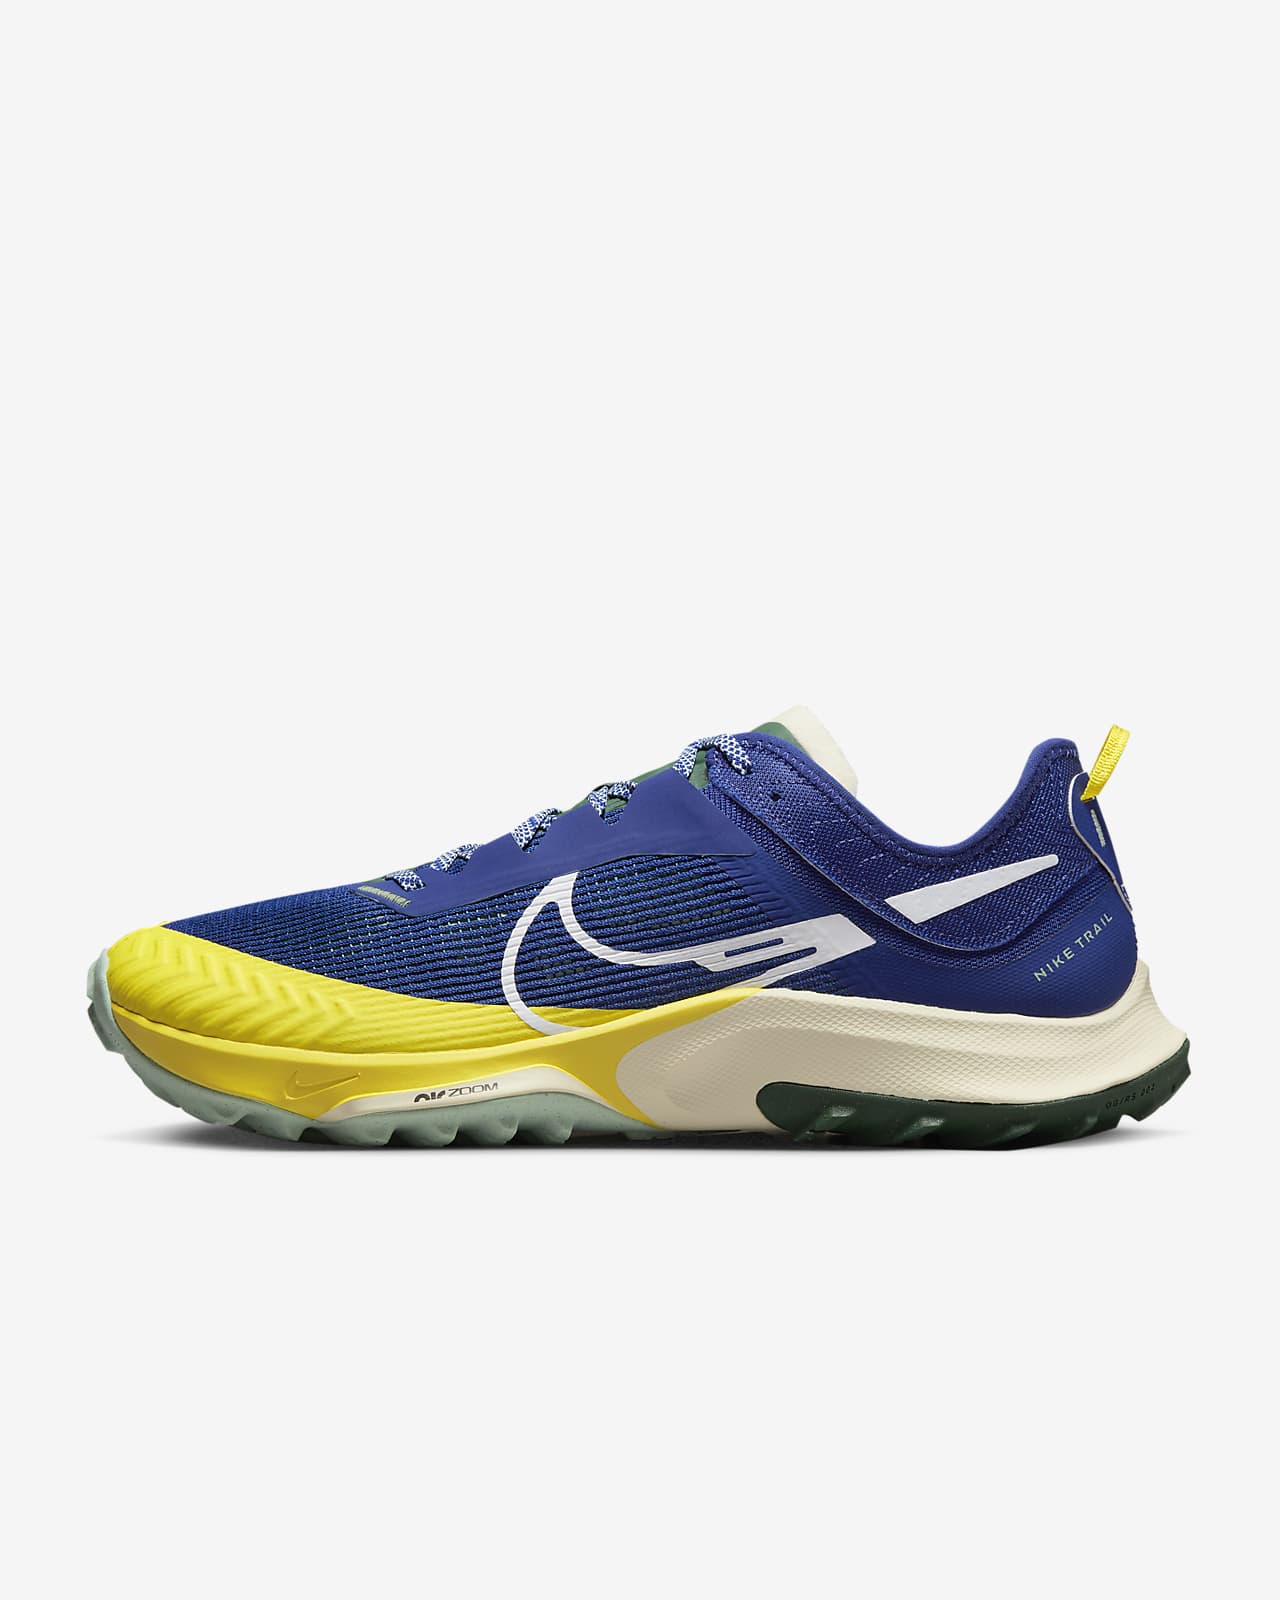 Ανδρικά παπούτσια για τρέξιμο σε ανώμαλο δρόμο Nike Air Zoom Terra Kiger 8